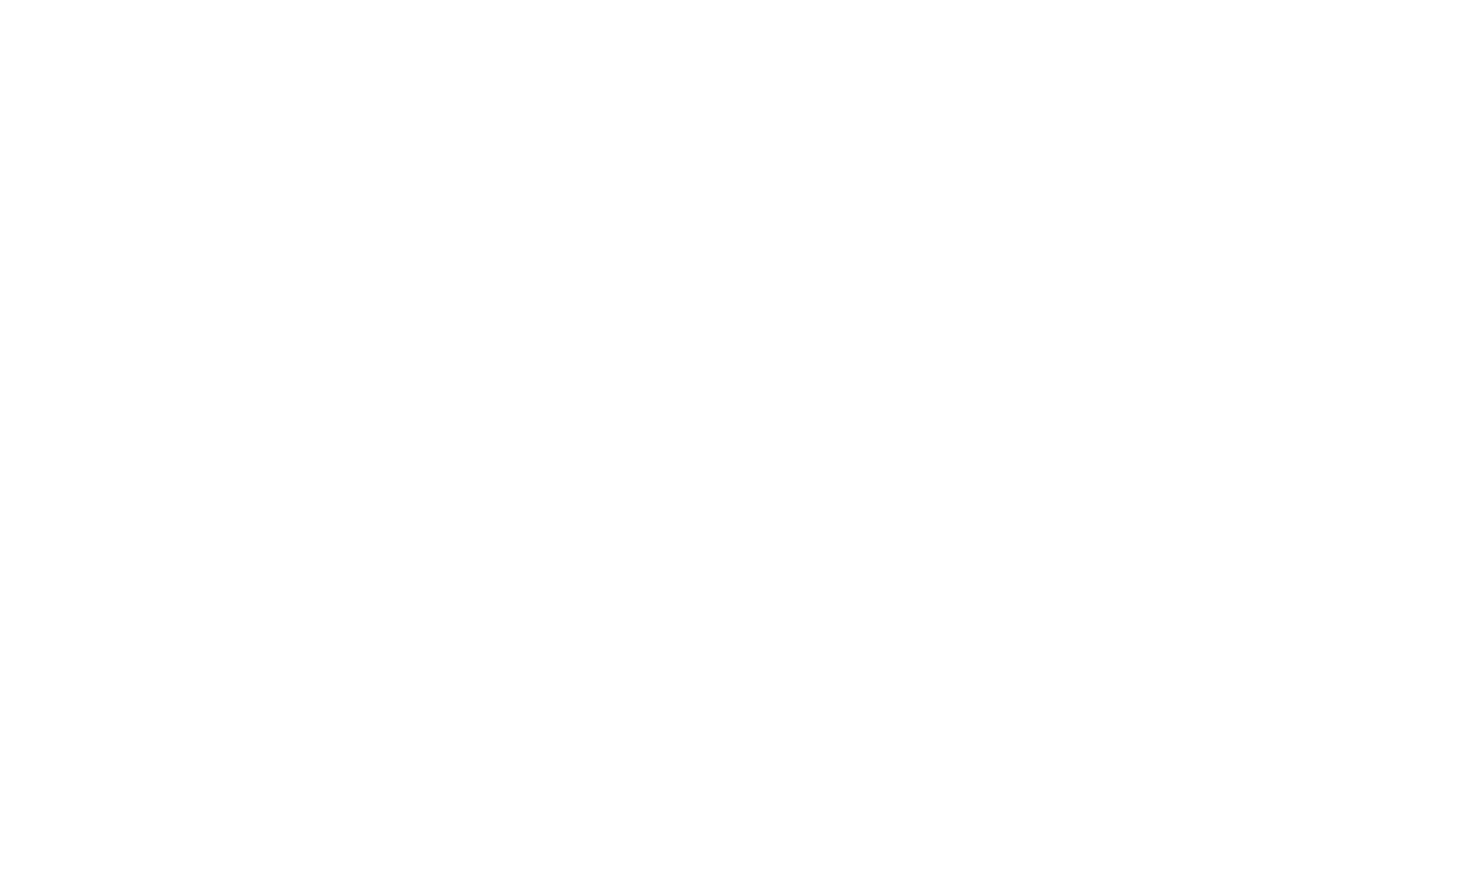 العربية.ما alaarabiya.ma